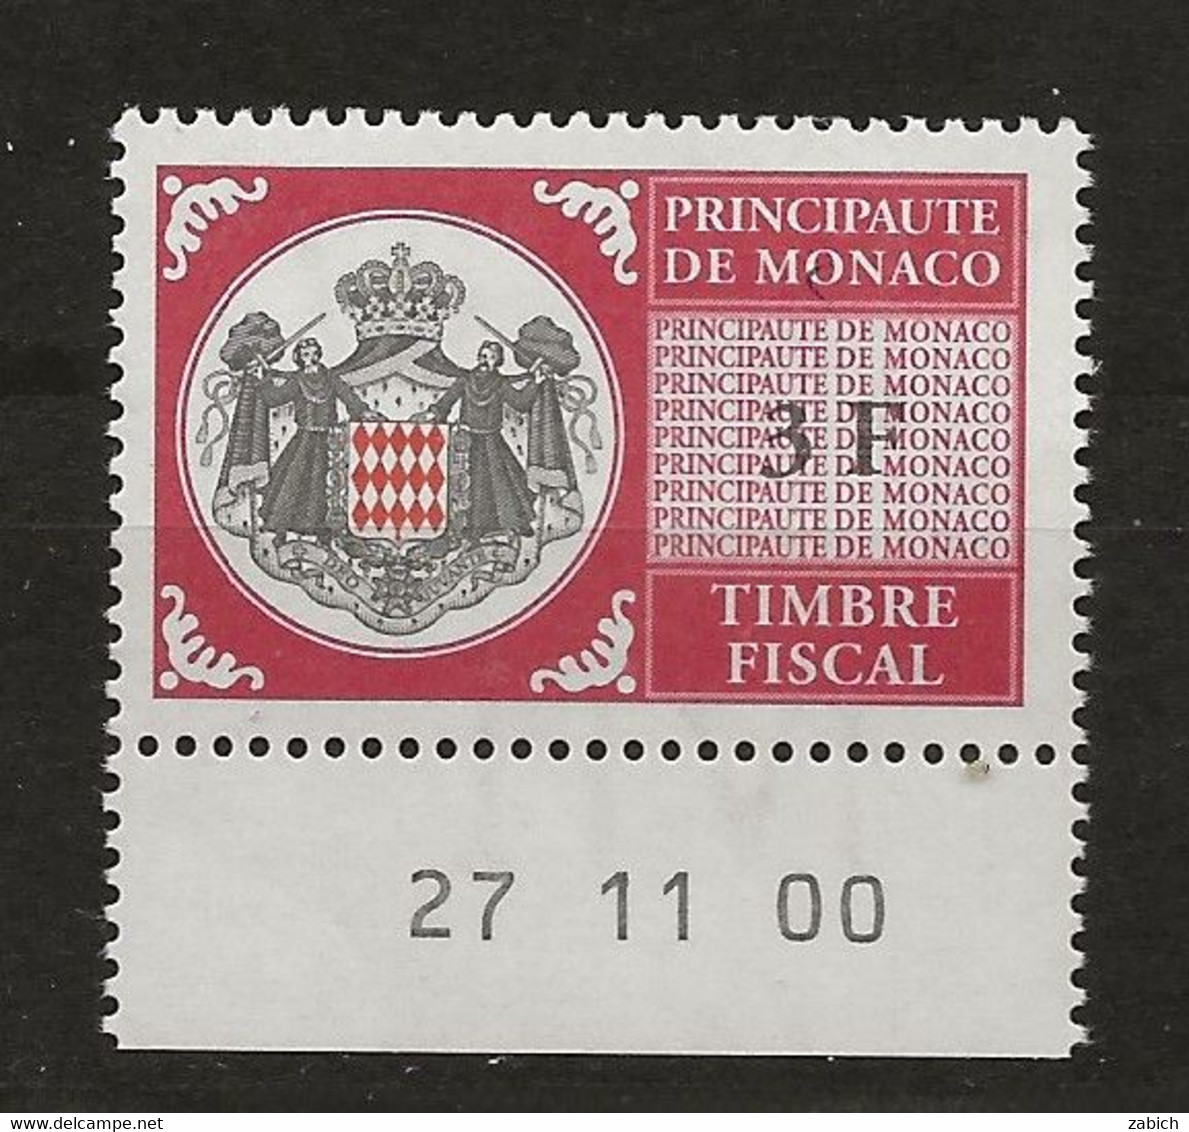 TIMBRES FISCAUX DE MONACO SERIE UNIFIEE N°99 3 F Rouge  Coin Daté Du 27 11 00 Neuf Gomme Mnh (**) - Fiscales